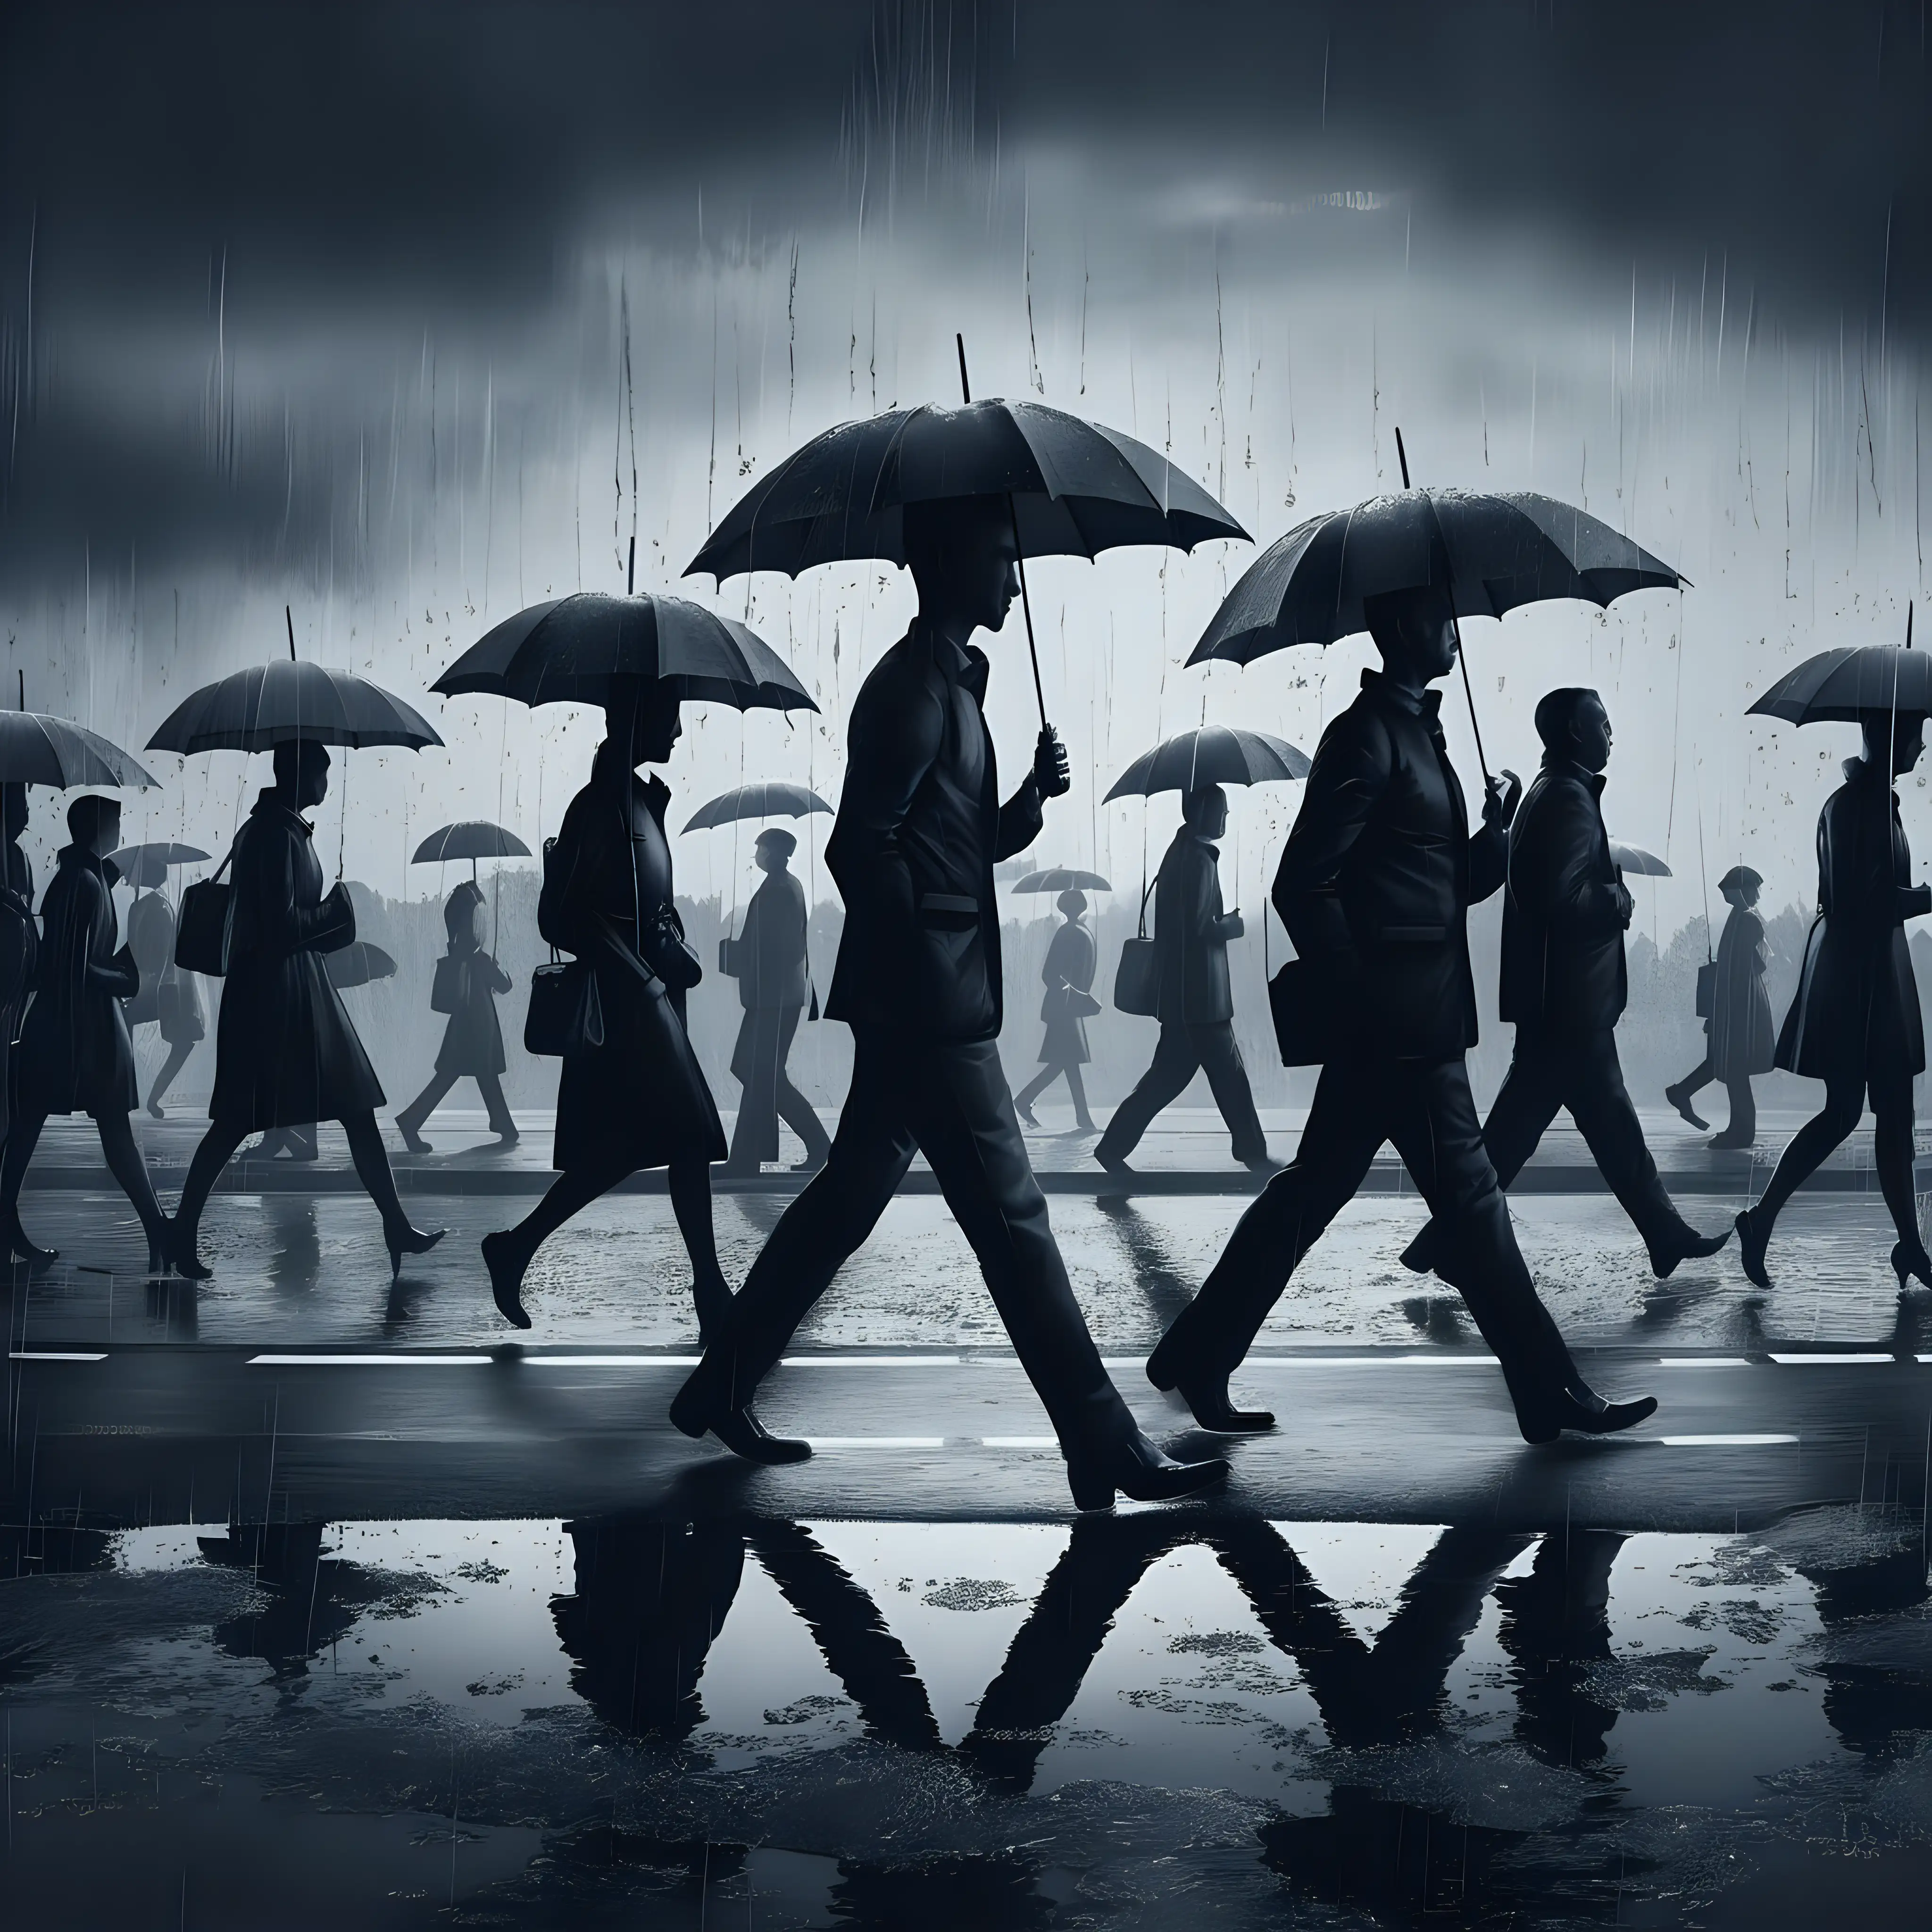 серые  силуэты людей в современной  одежде с зонтами  идут  вдоль дороги  на сером фоле плакат  перешагивают через лужи  плакат  плоский рисунок